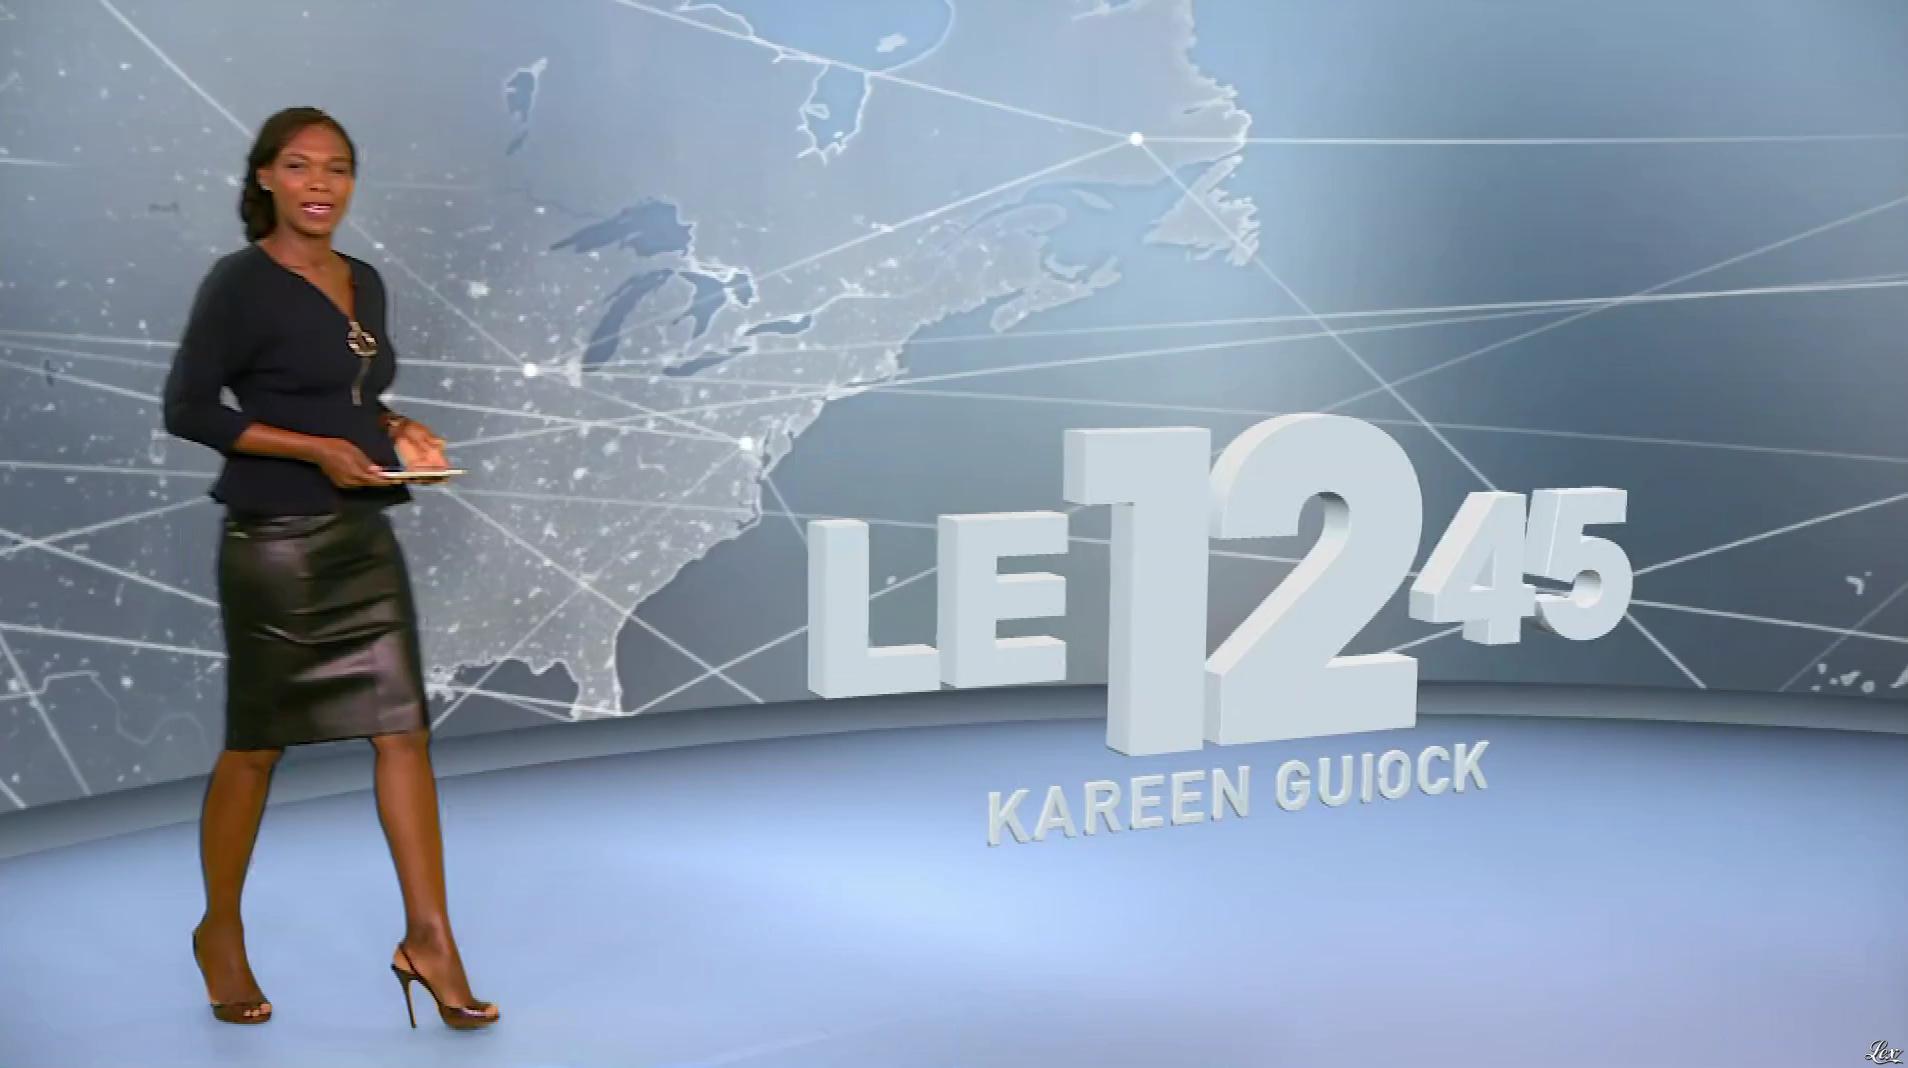 Kareen Guiock dans le 12-45. Diffusé à la télévision le 02/10/17.